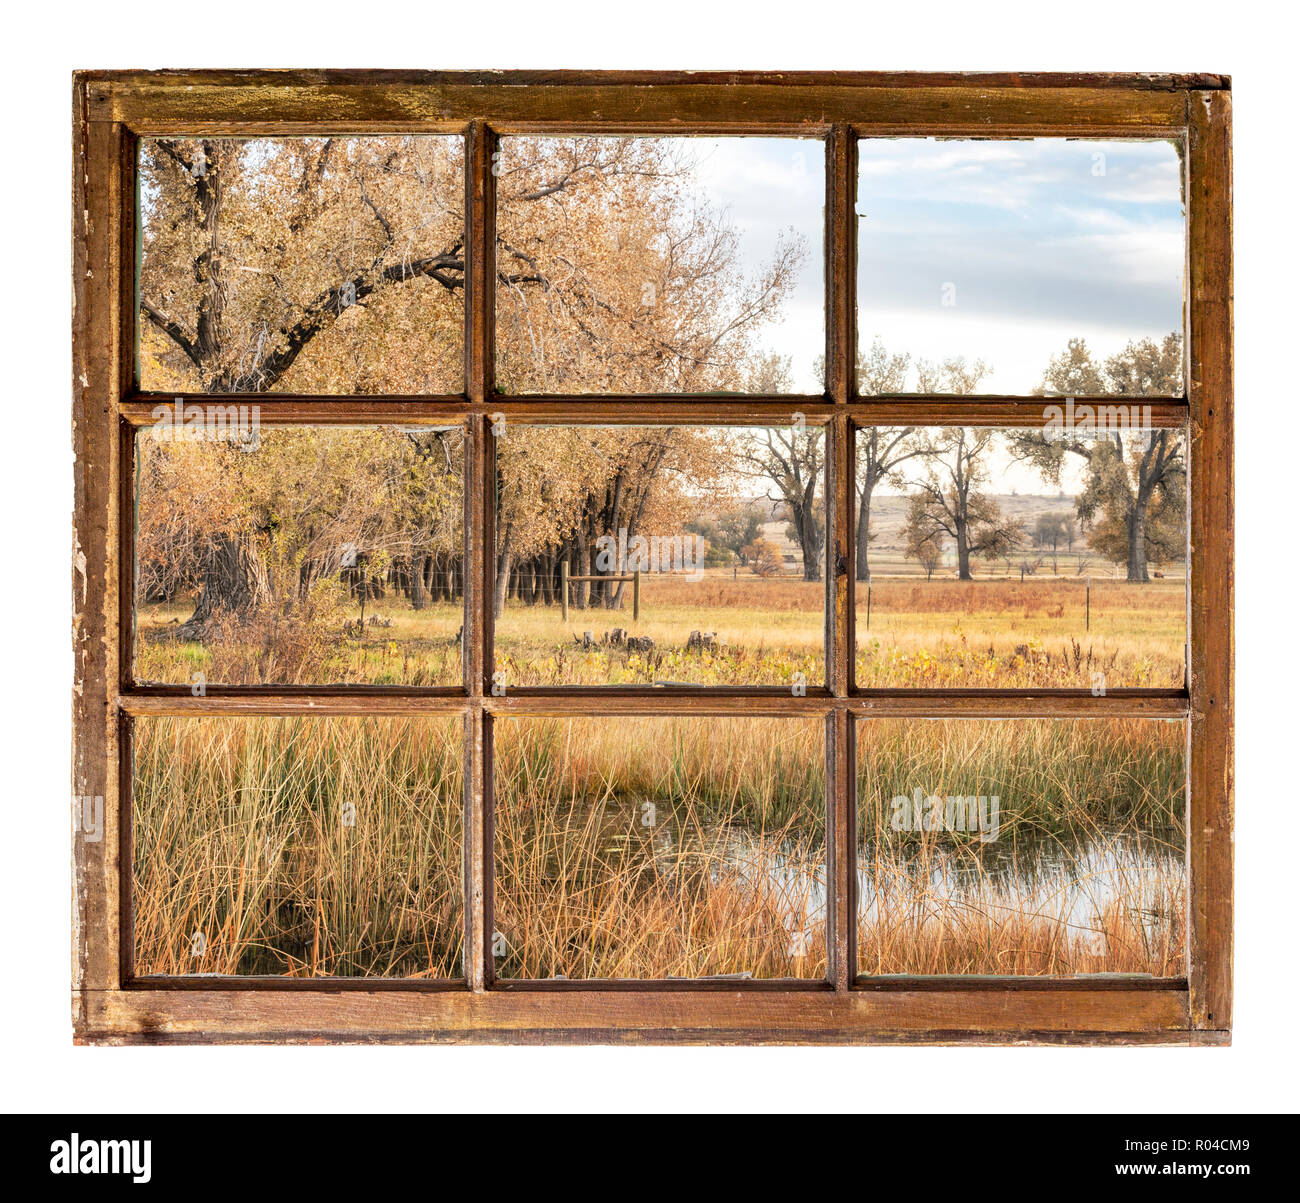 Paesaggio rurale in Colorado settentrionale lungo il fiume Poudre, nostalgico ottobre scenario come visto attraverso una finestra vintage Foto Stock